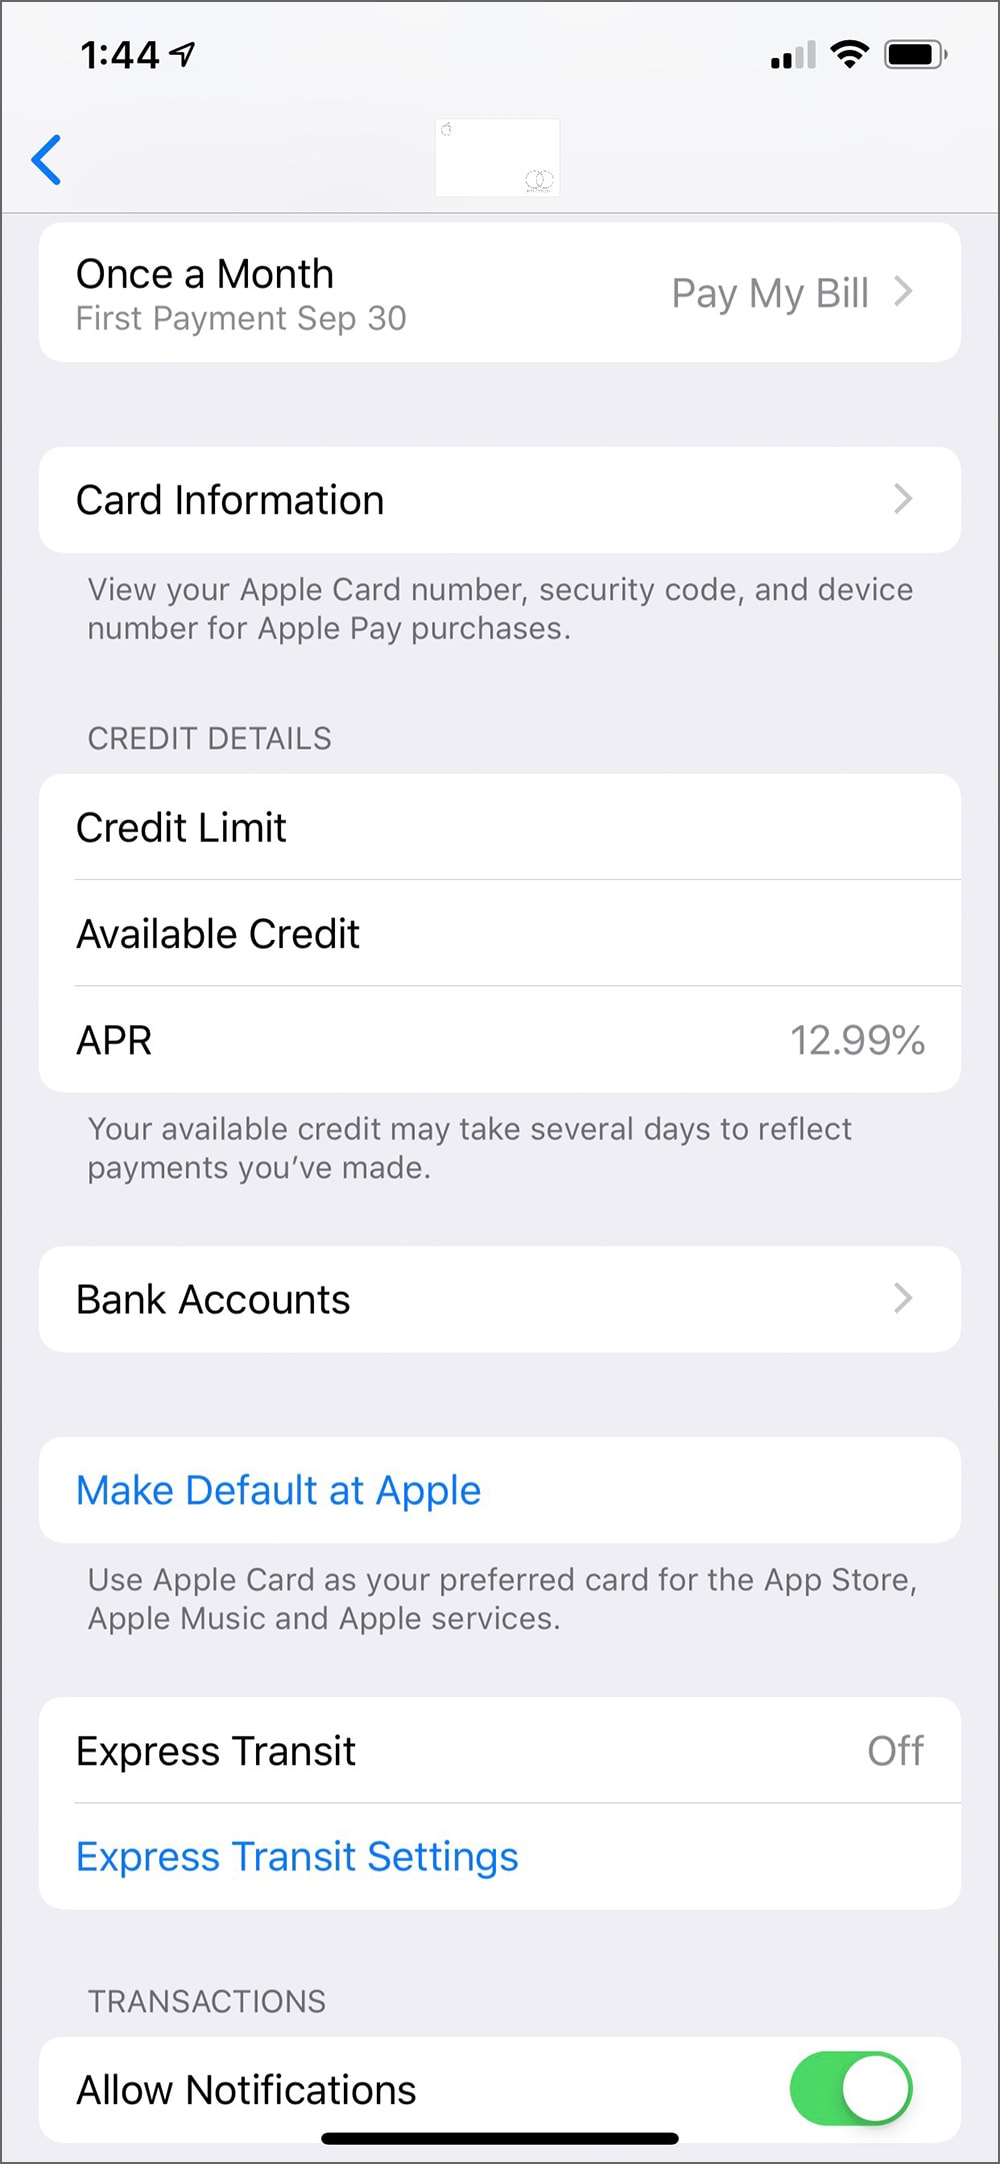 Apple Card setting screen in Wallet app